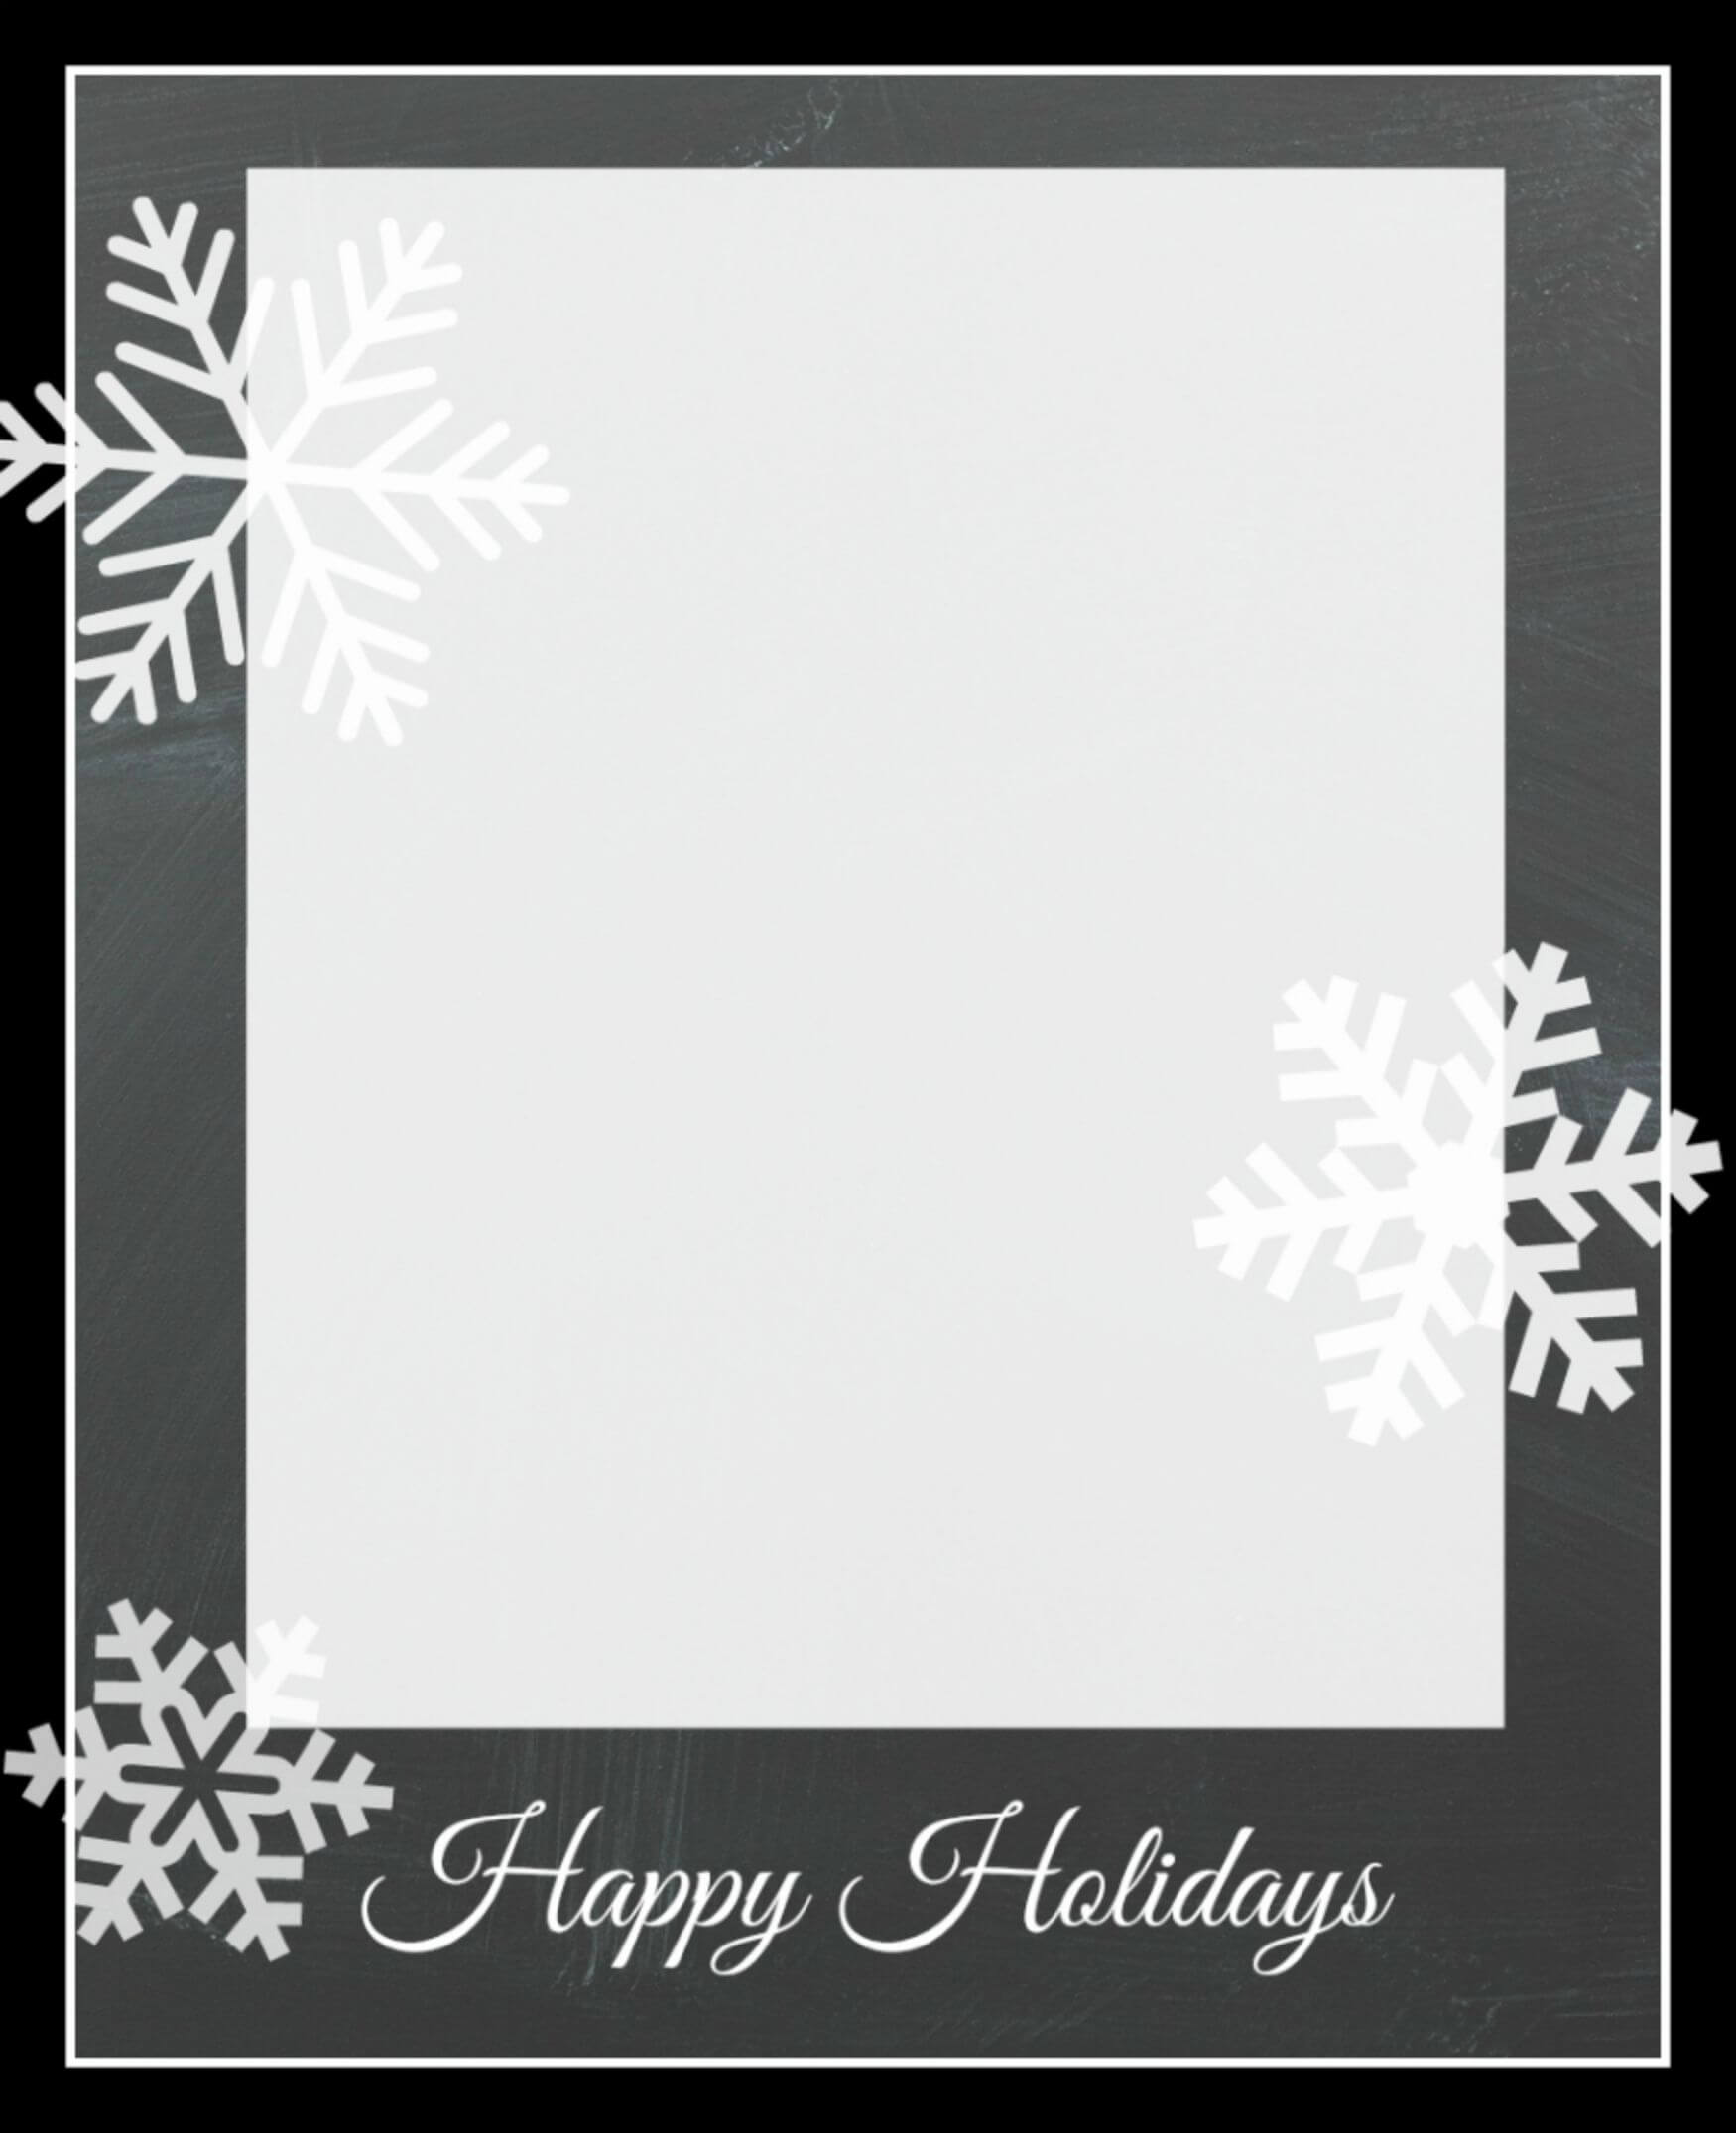 Free Christmas Card Templates | Christmas Card Template For Happy Holidays Card Template